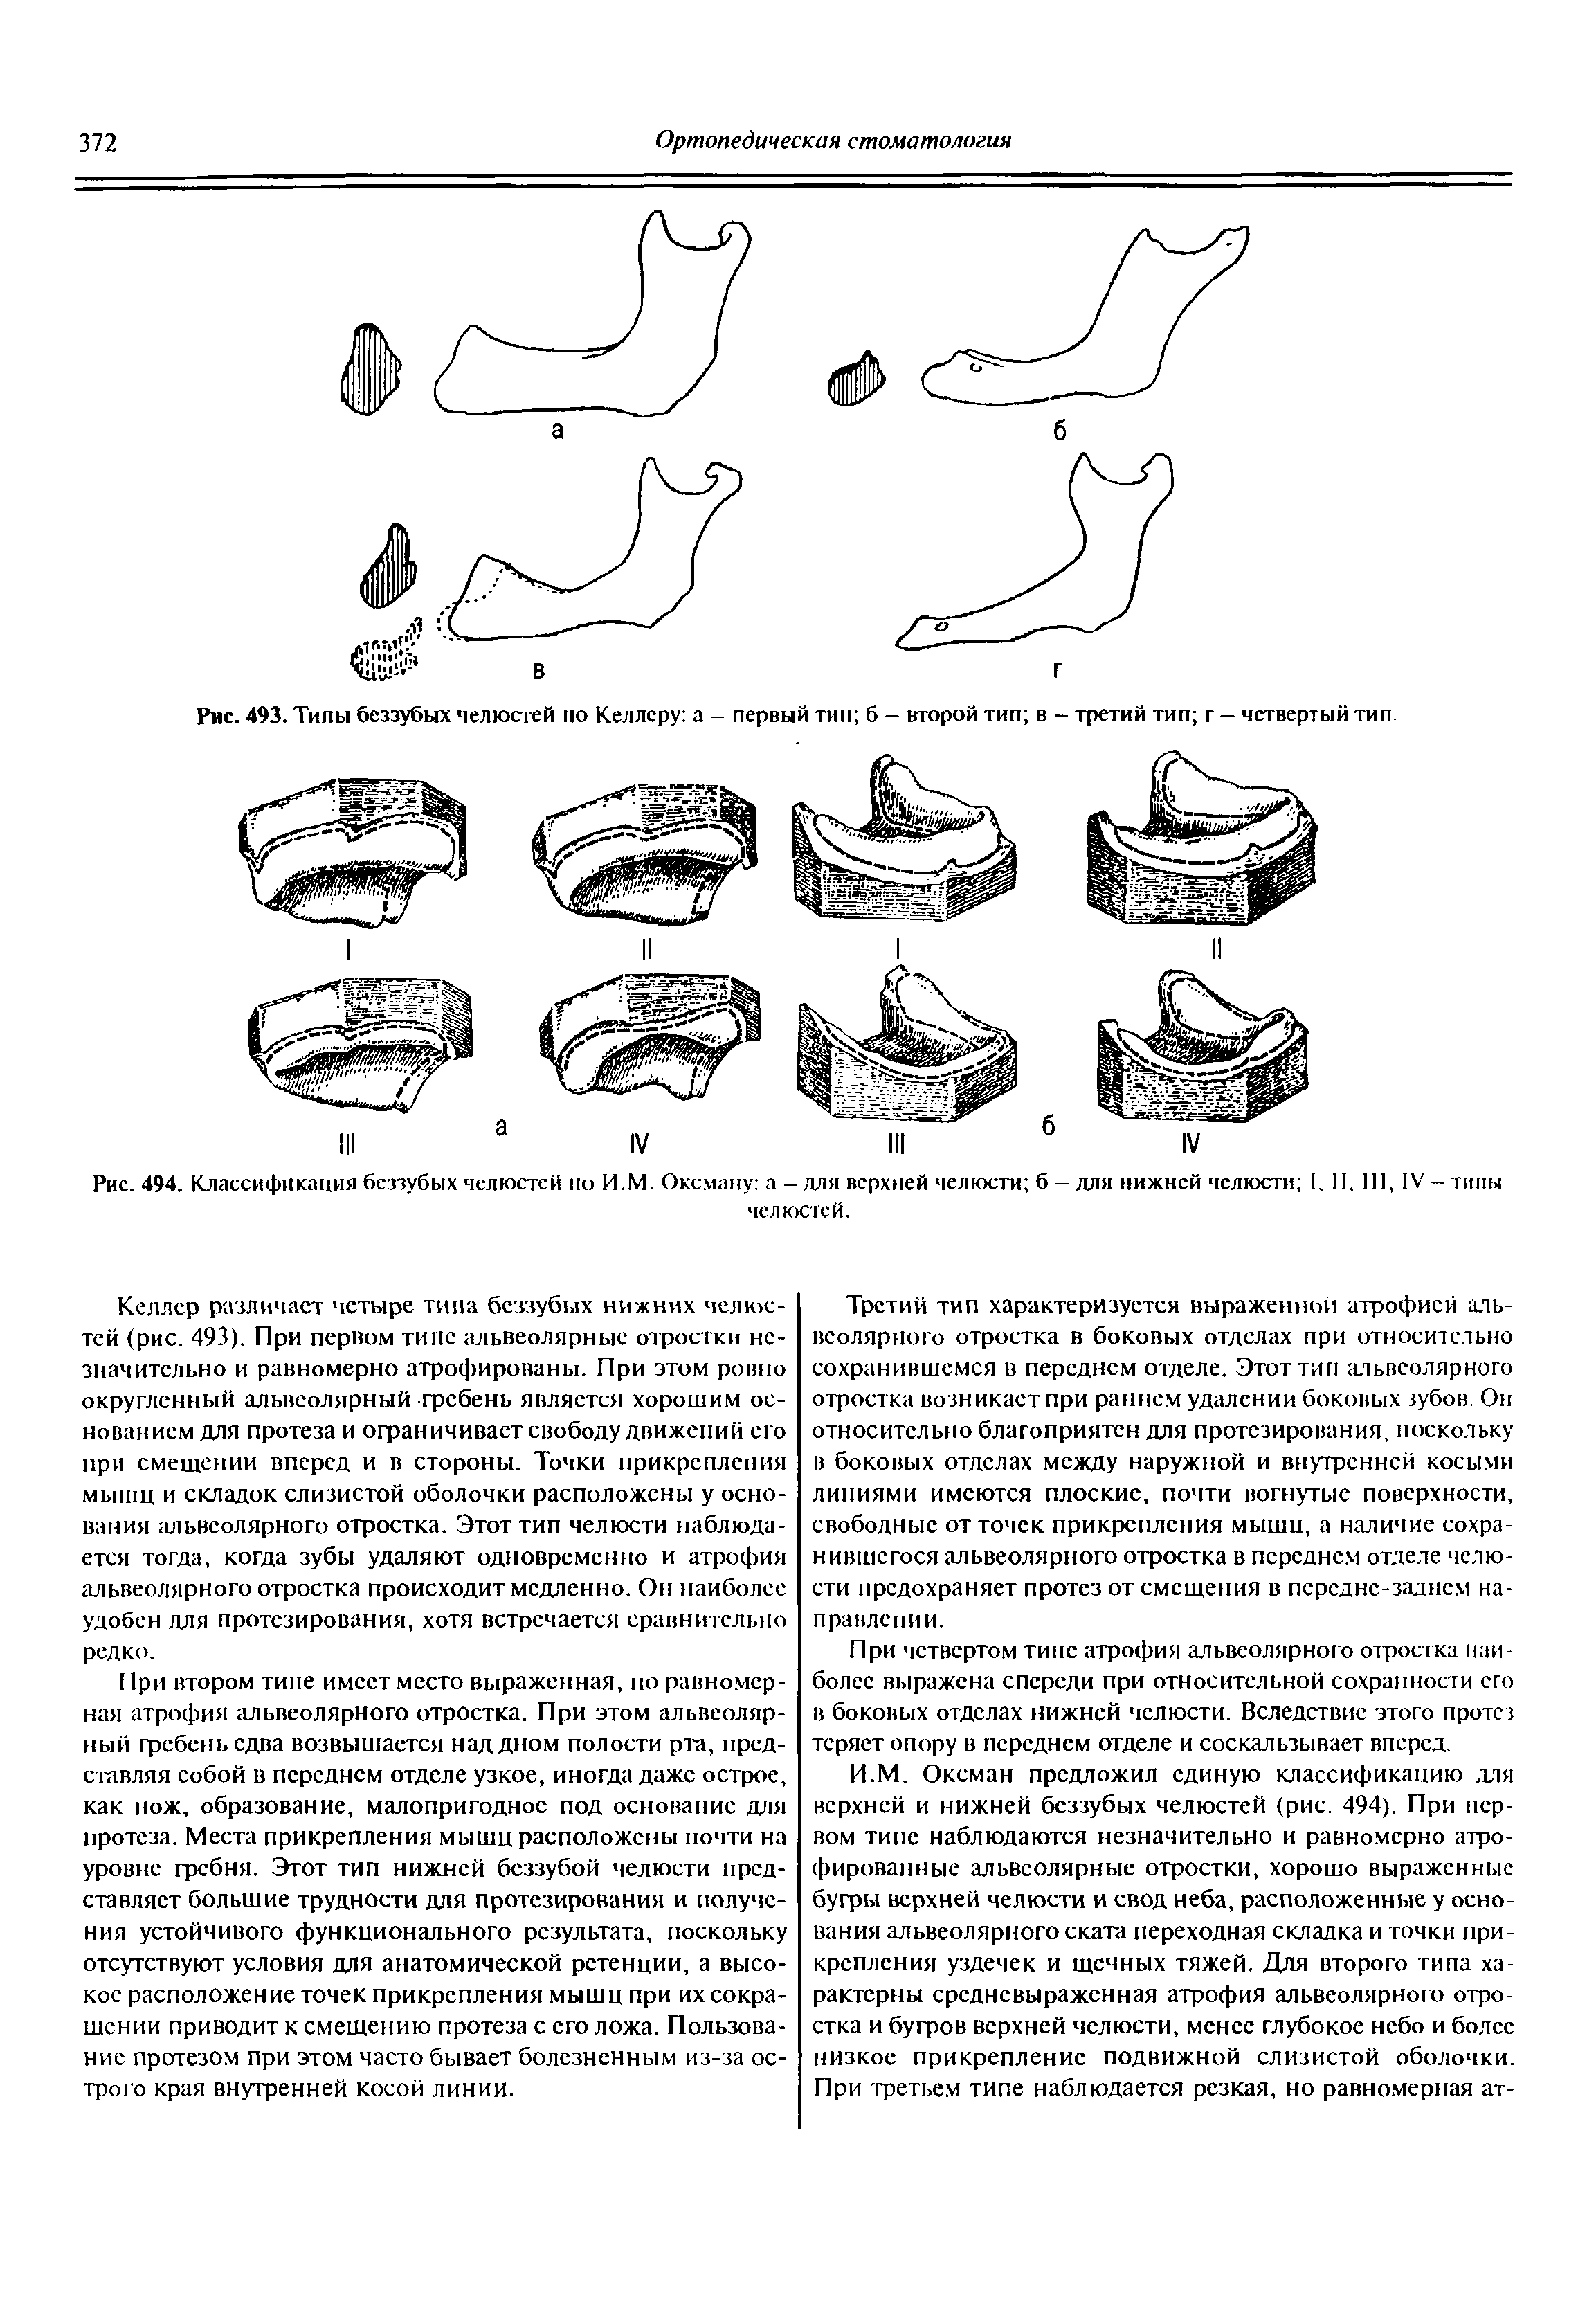 Рис. 494. Классификация беззубых челюстей по И.М. Оксману а - для верхней челюсти б - для нижней челюсти I. II. I , IV - типы челюстей.